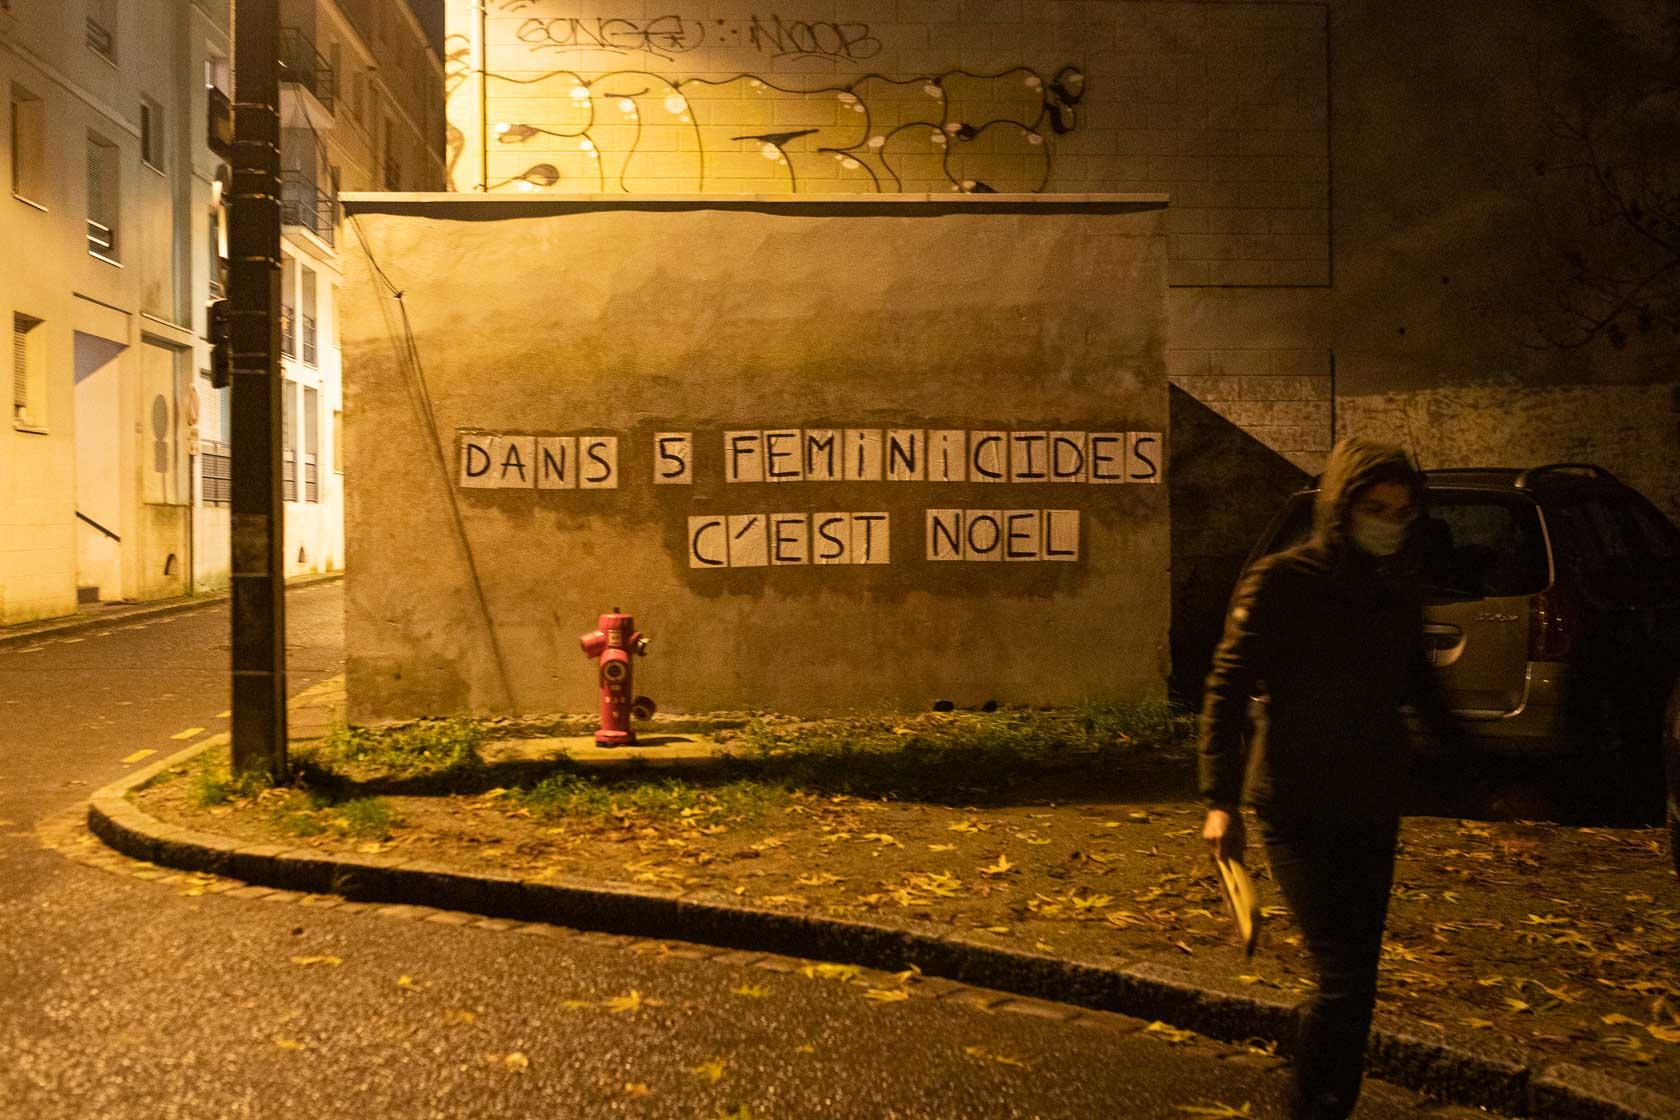 Une militante féministe s'éloigne d'un collage qu'elle vient d'effectuer Nantes, France - 2020